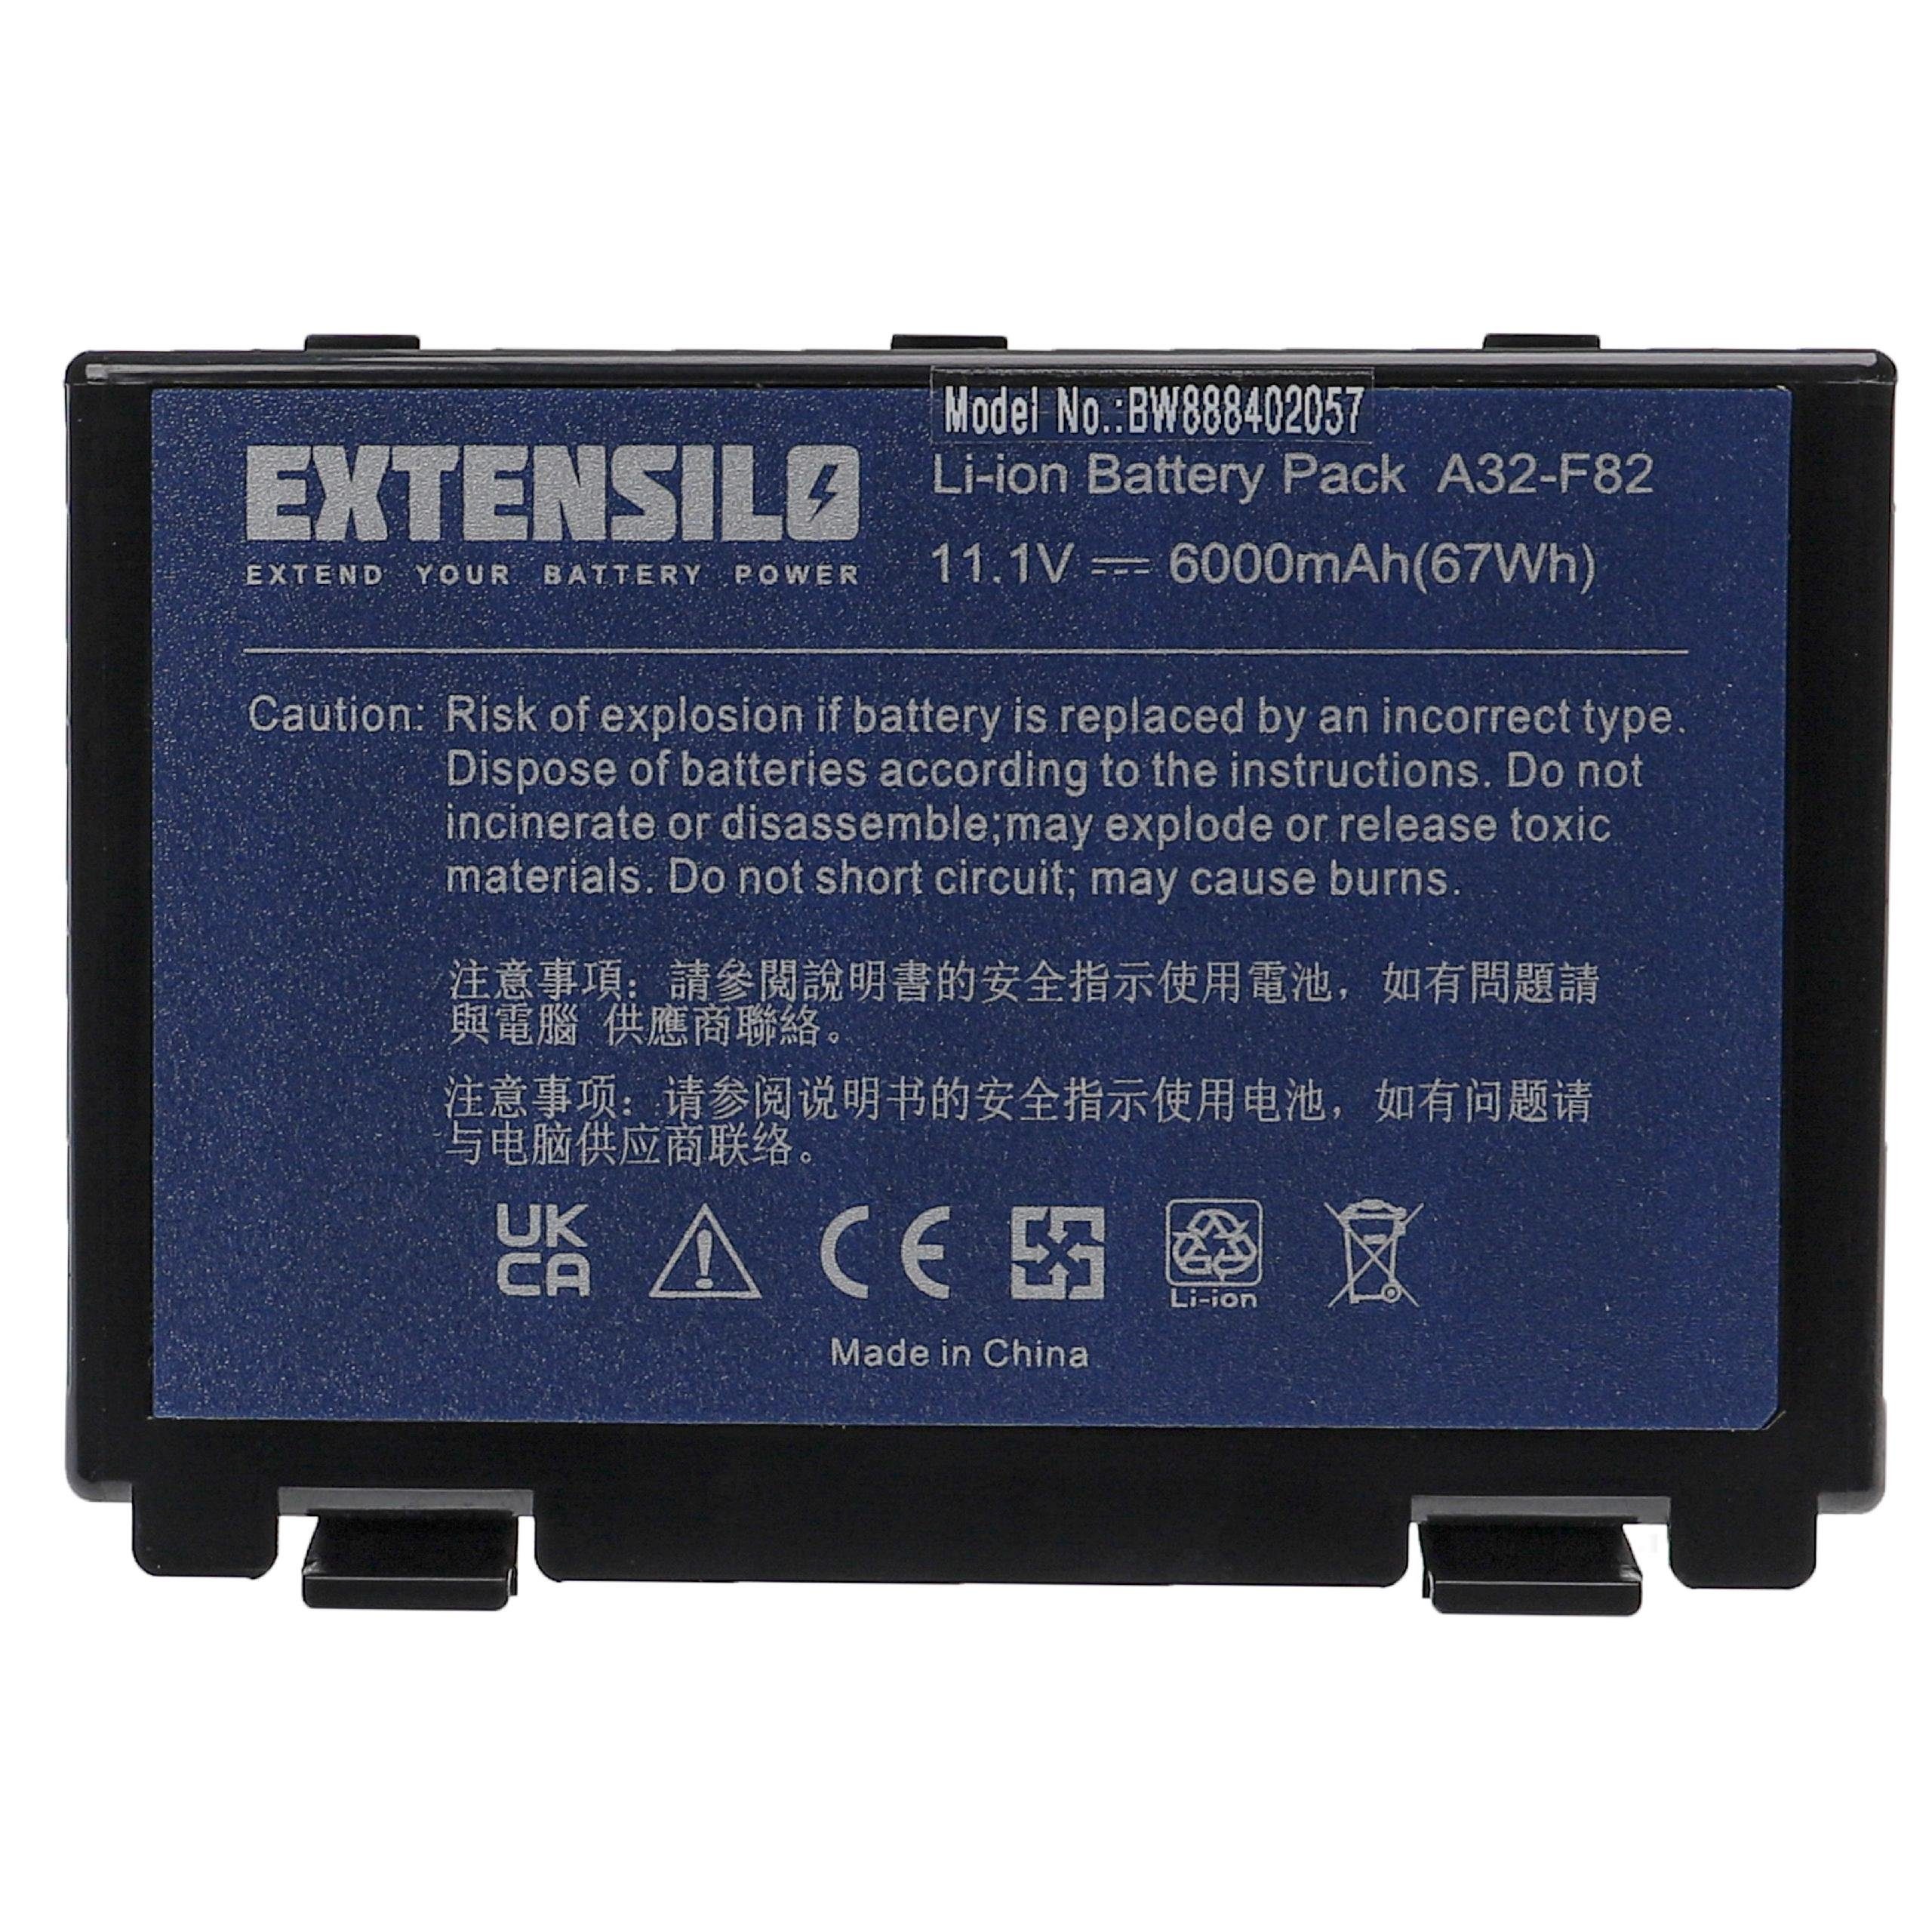 Extensilo passend für Asus Pro 8B, Pro 8D, X66IC, X50, X65, X66, X87, X5c, X5d, Laptop-Akku 6000 mAh